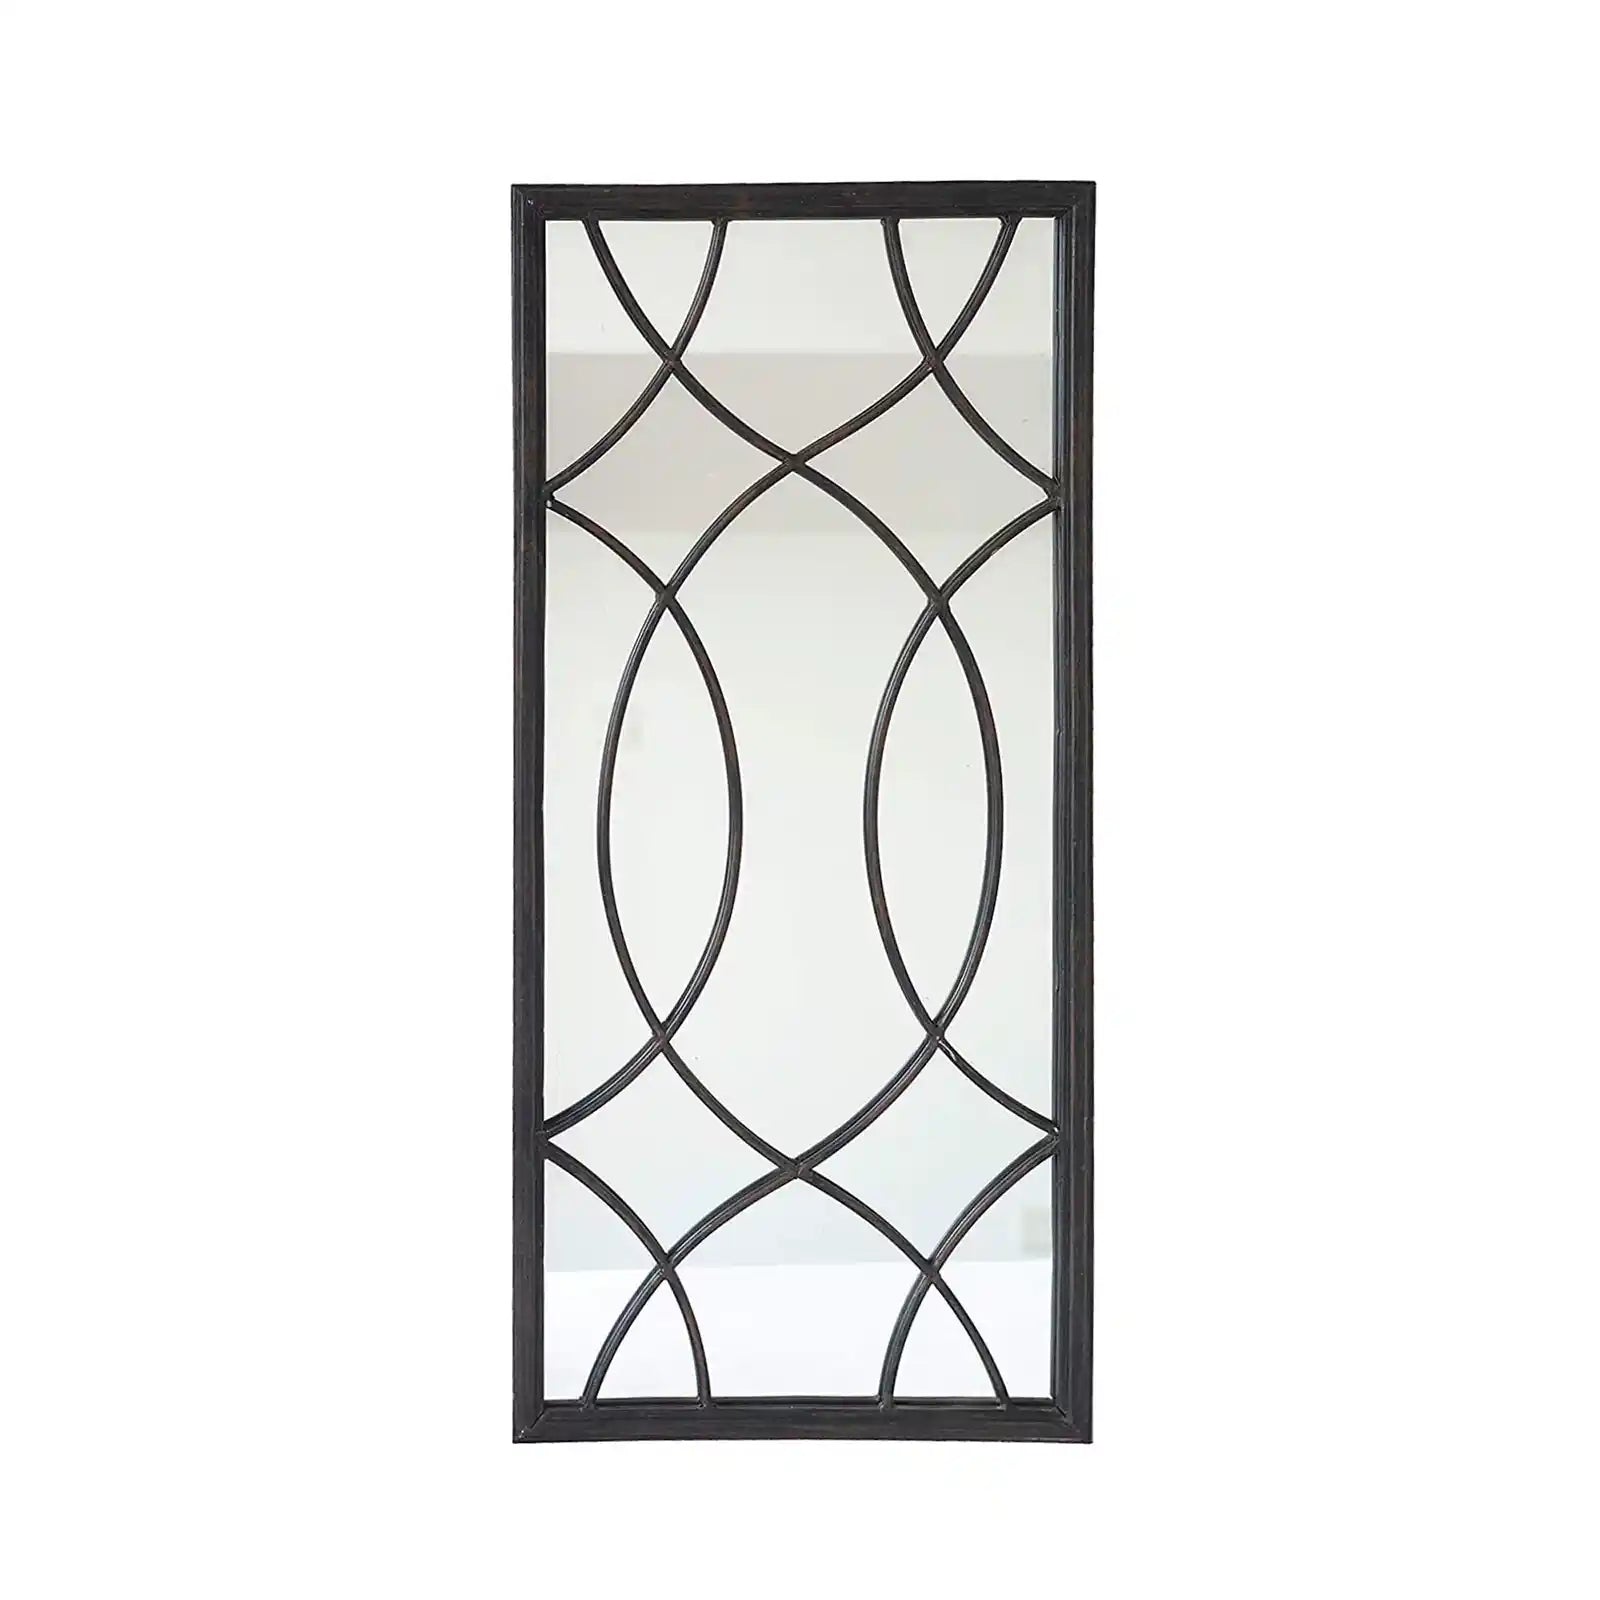 Rectangle Window Pane Metal Wall Mirror, Black